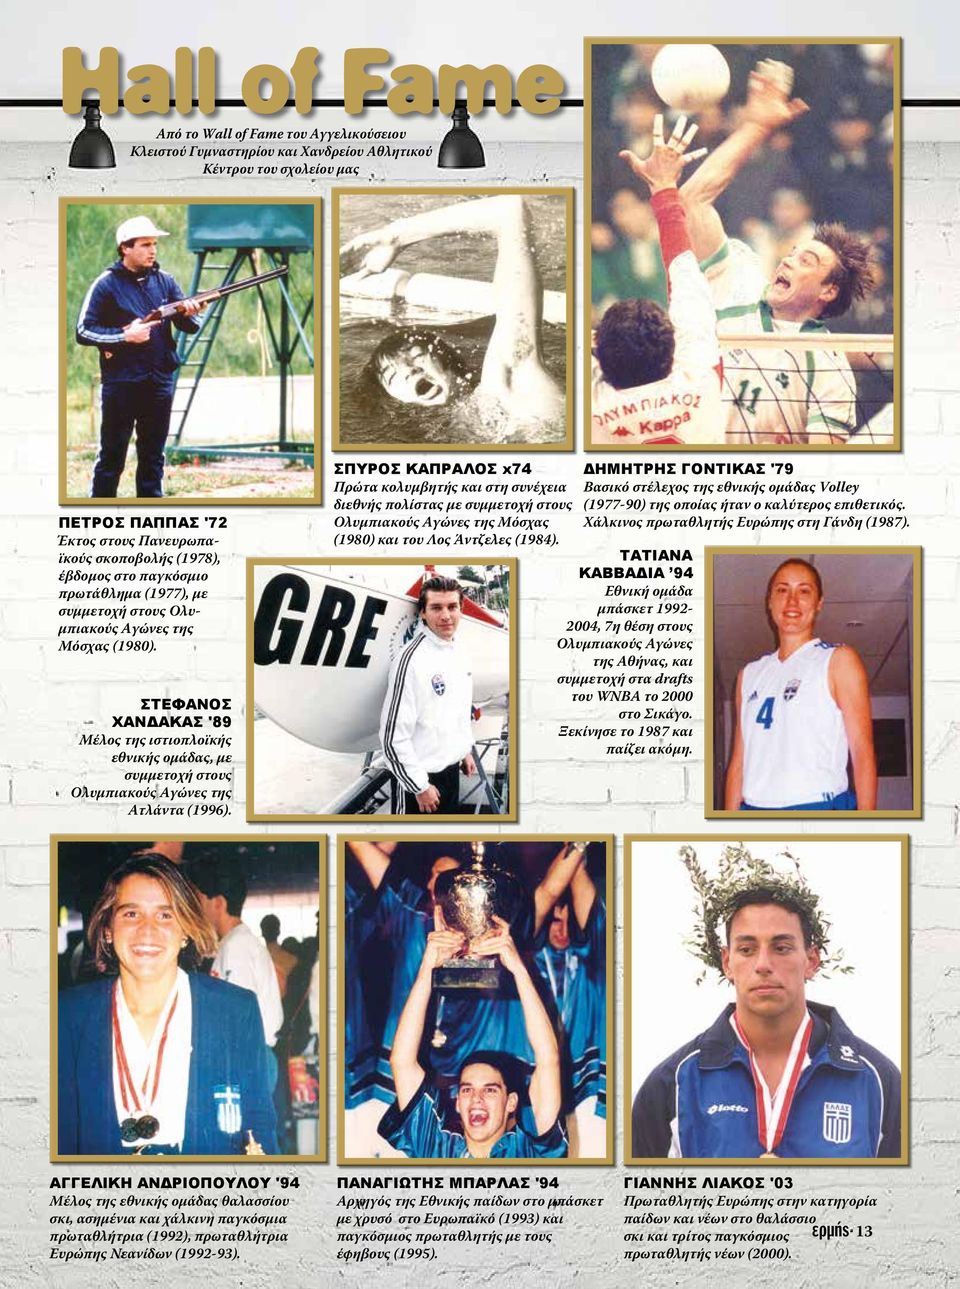 Στέφανος Χανδακάς '89 Μέλος της ιστιοπλοϊκής εθνικής ομάδας, με συμμετοχή στους Ολυμπιακούς Αγώνες της Ατλάντα (1996).